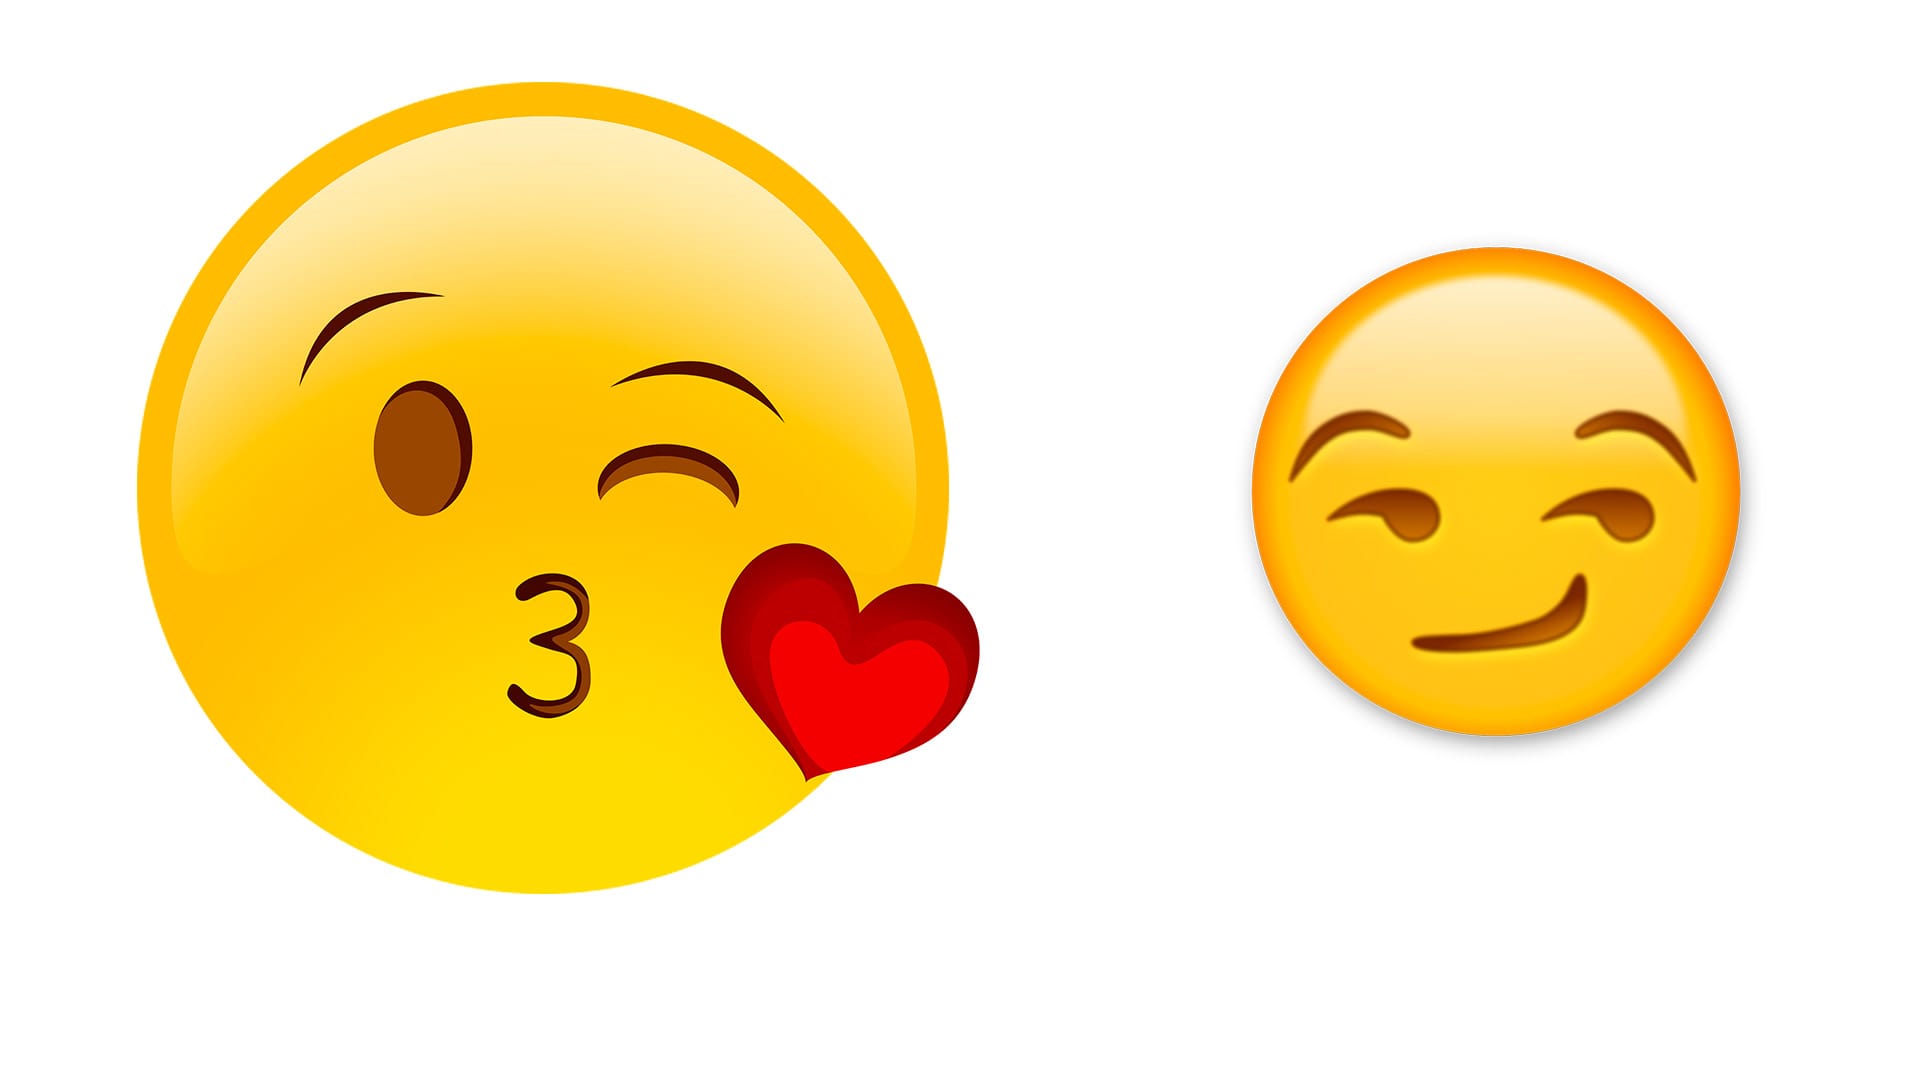 Imagenes de Emojis